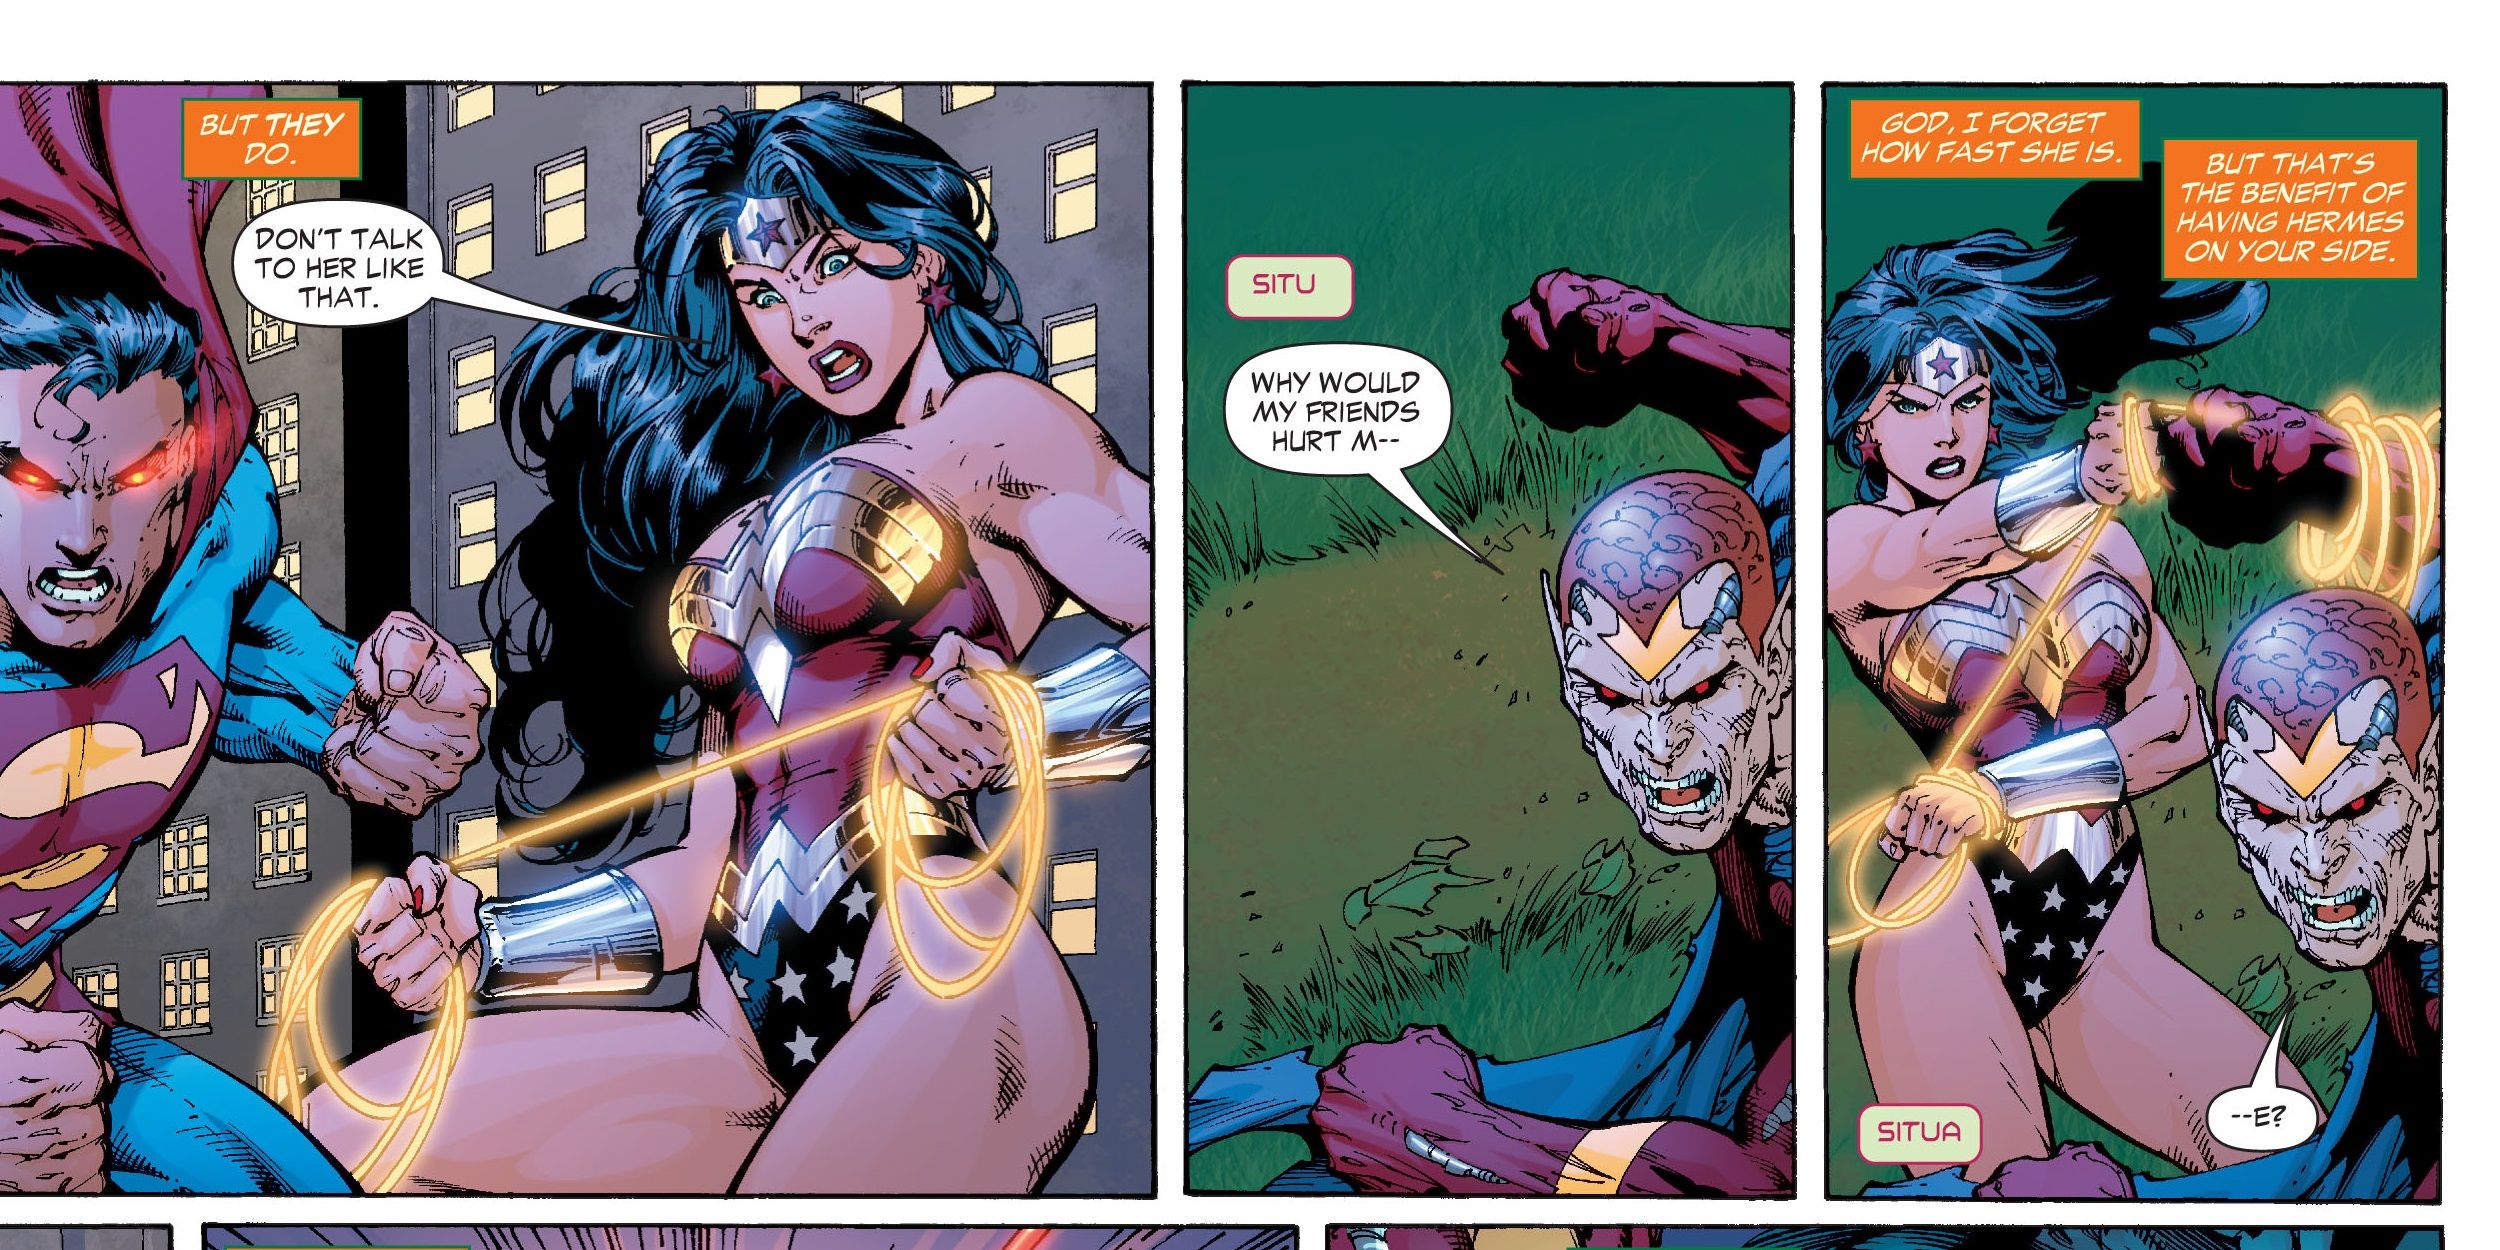 Wonder Woman using her super speed